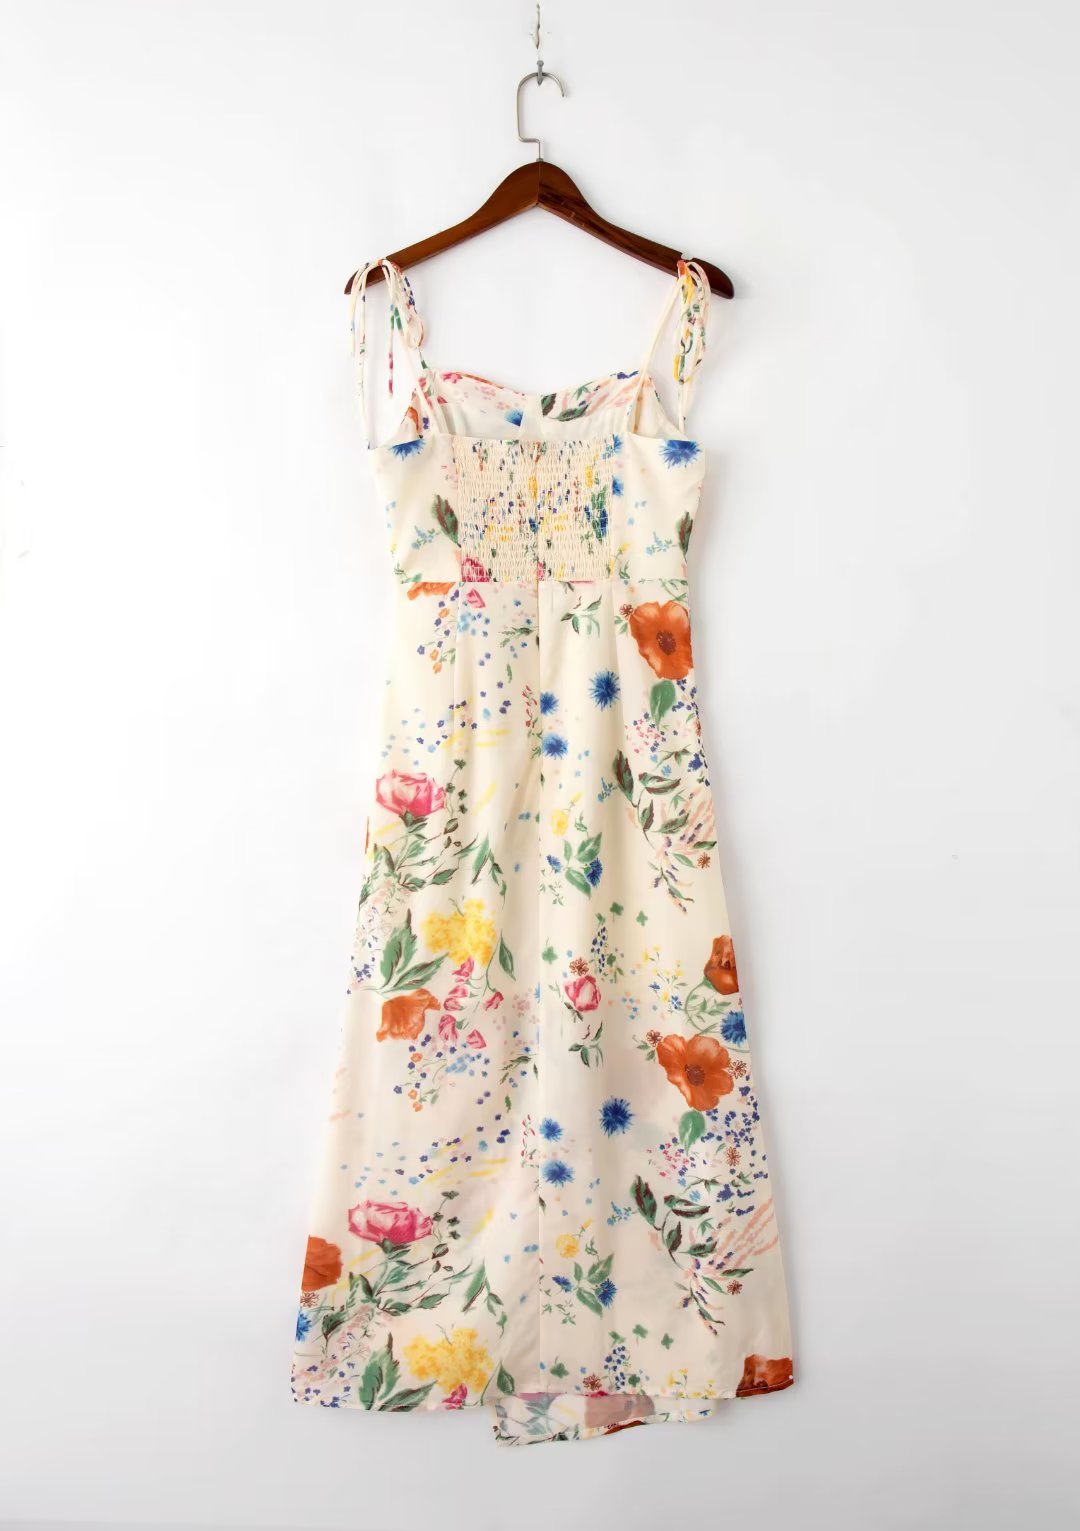 Slim Fit Elegant Printed Dress Summer Backless Cami Dress